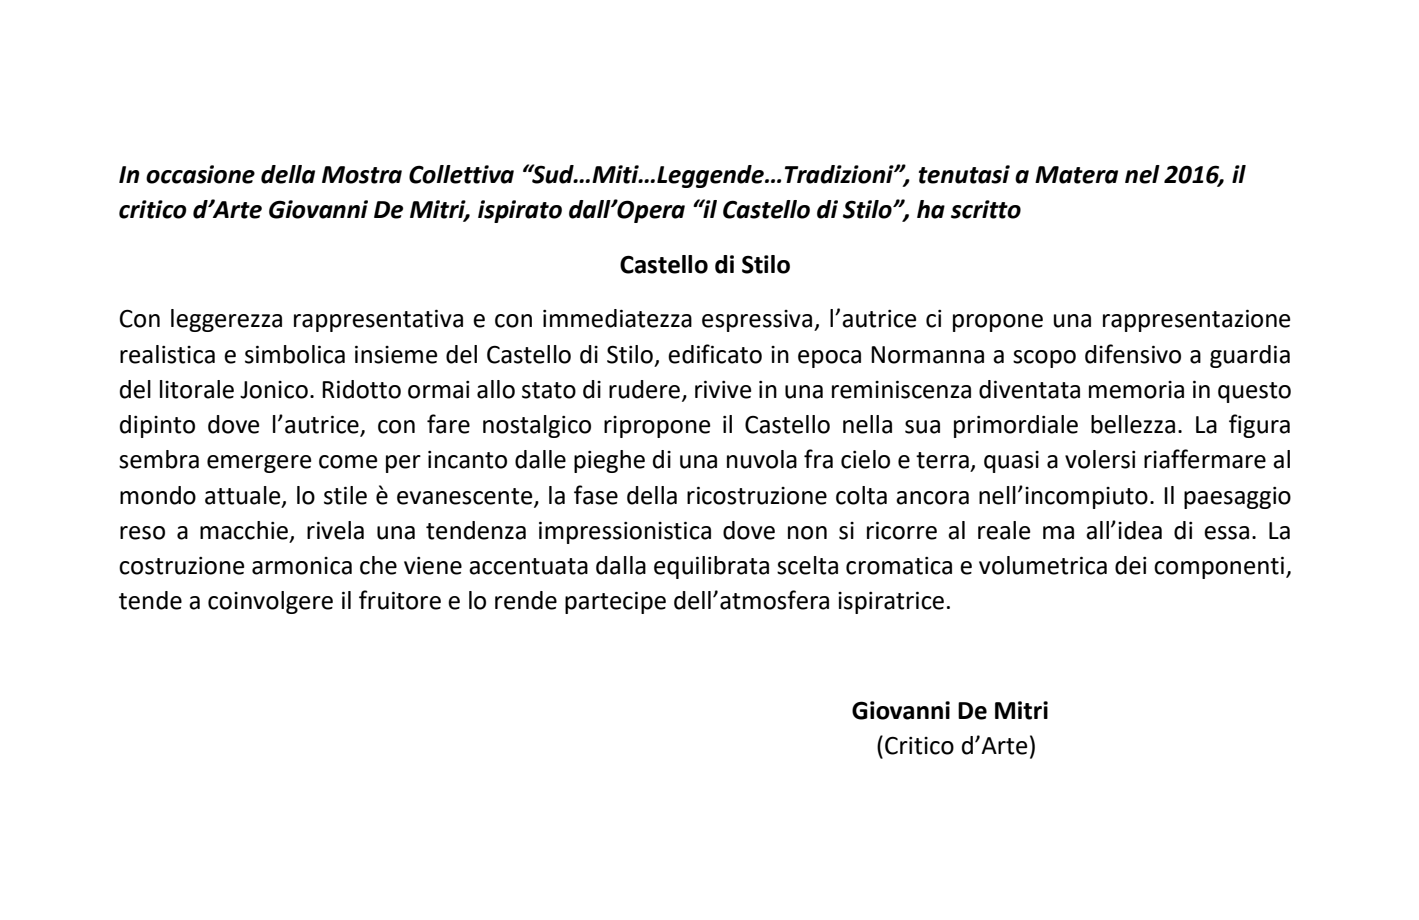 Recensione Critico d'Arte Giovanni De Mitri - Mostra Colletiva - Sud..Miti..leggende..tradizioni- Matera 2016